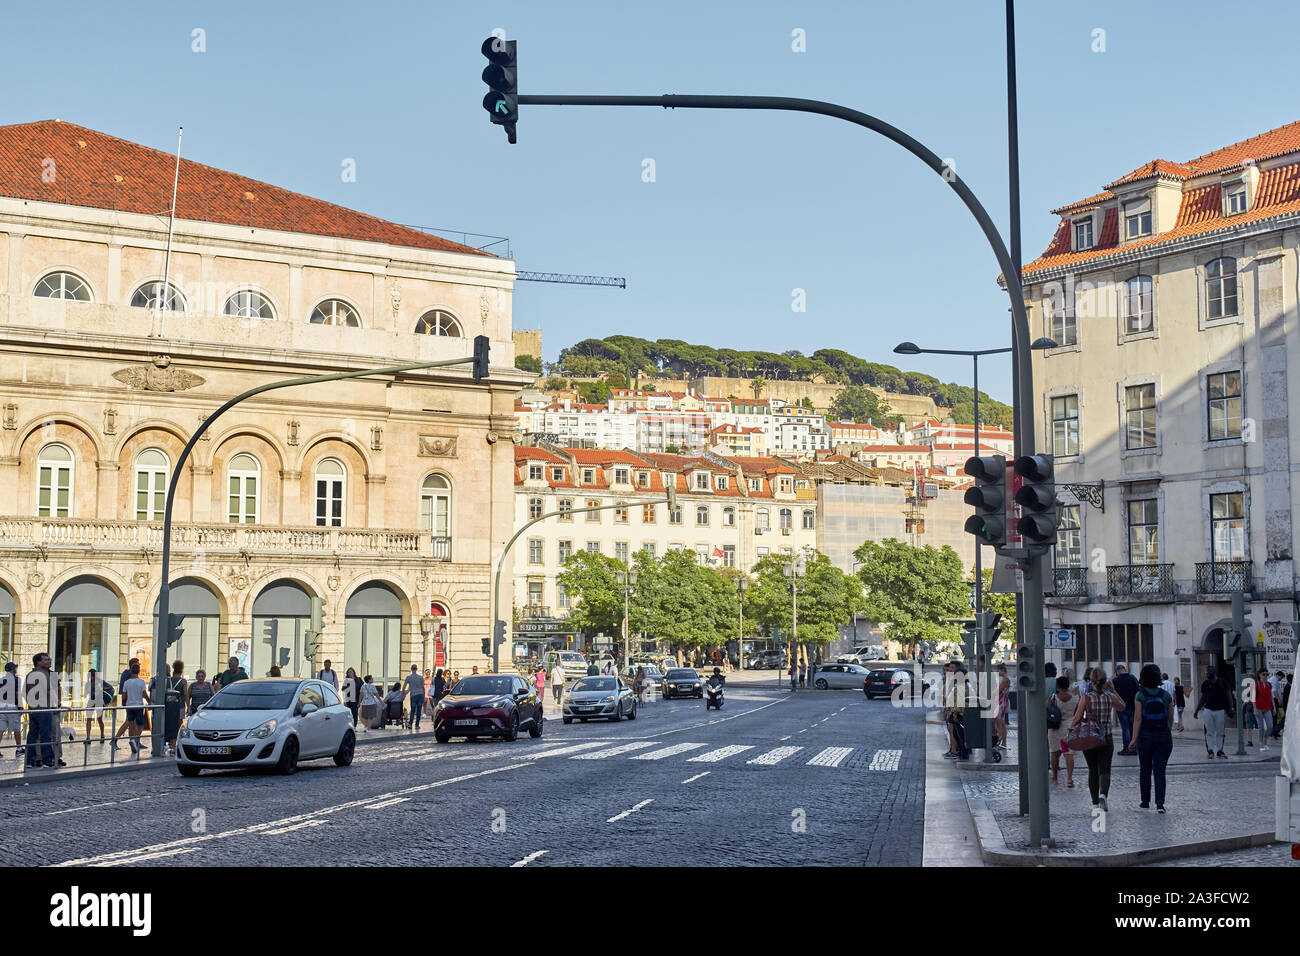 Lisbonne, Portugal - 29 août 2019 : façades de bâtiments traditionnels dans le centre historique de Lisbonne Banque D'Images